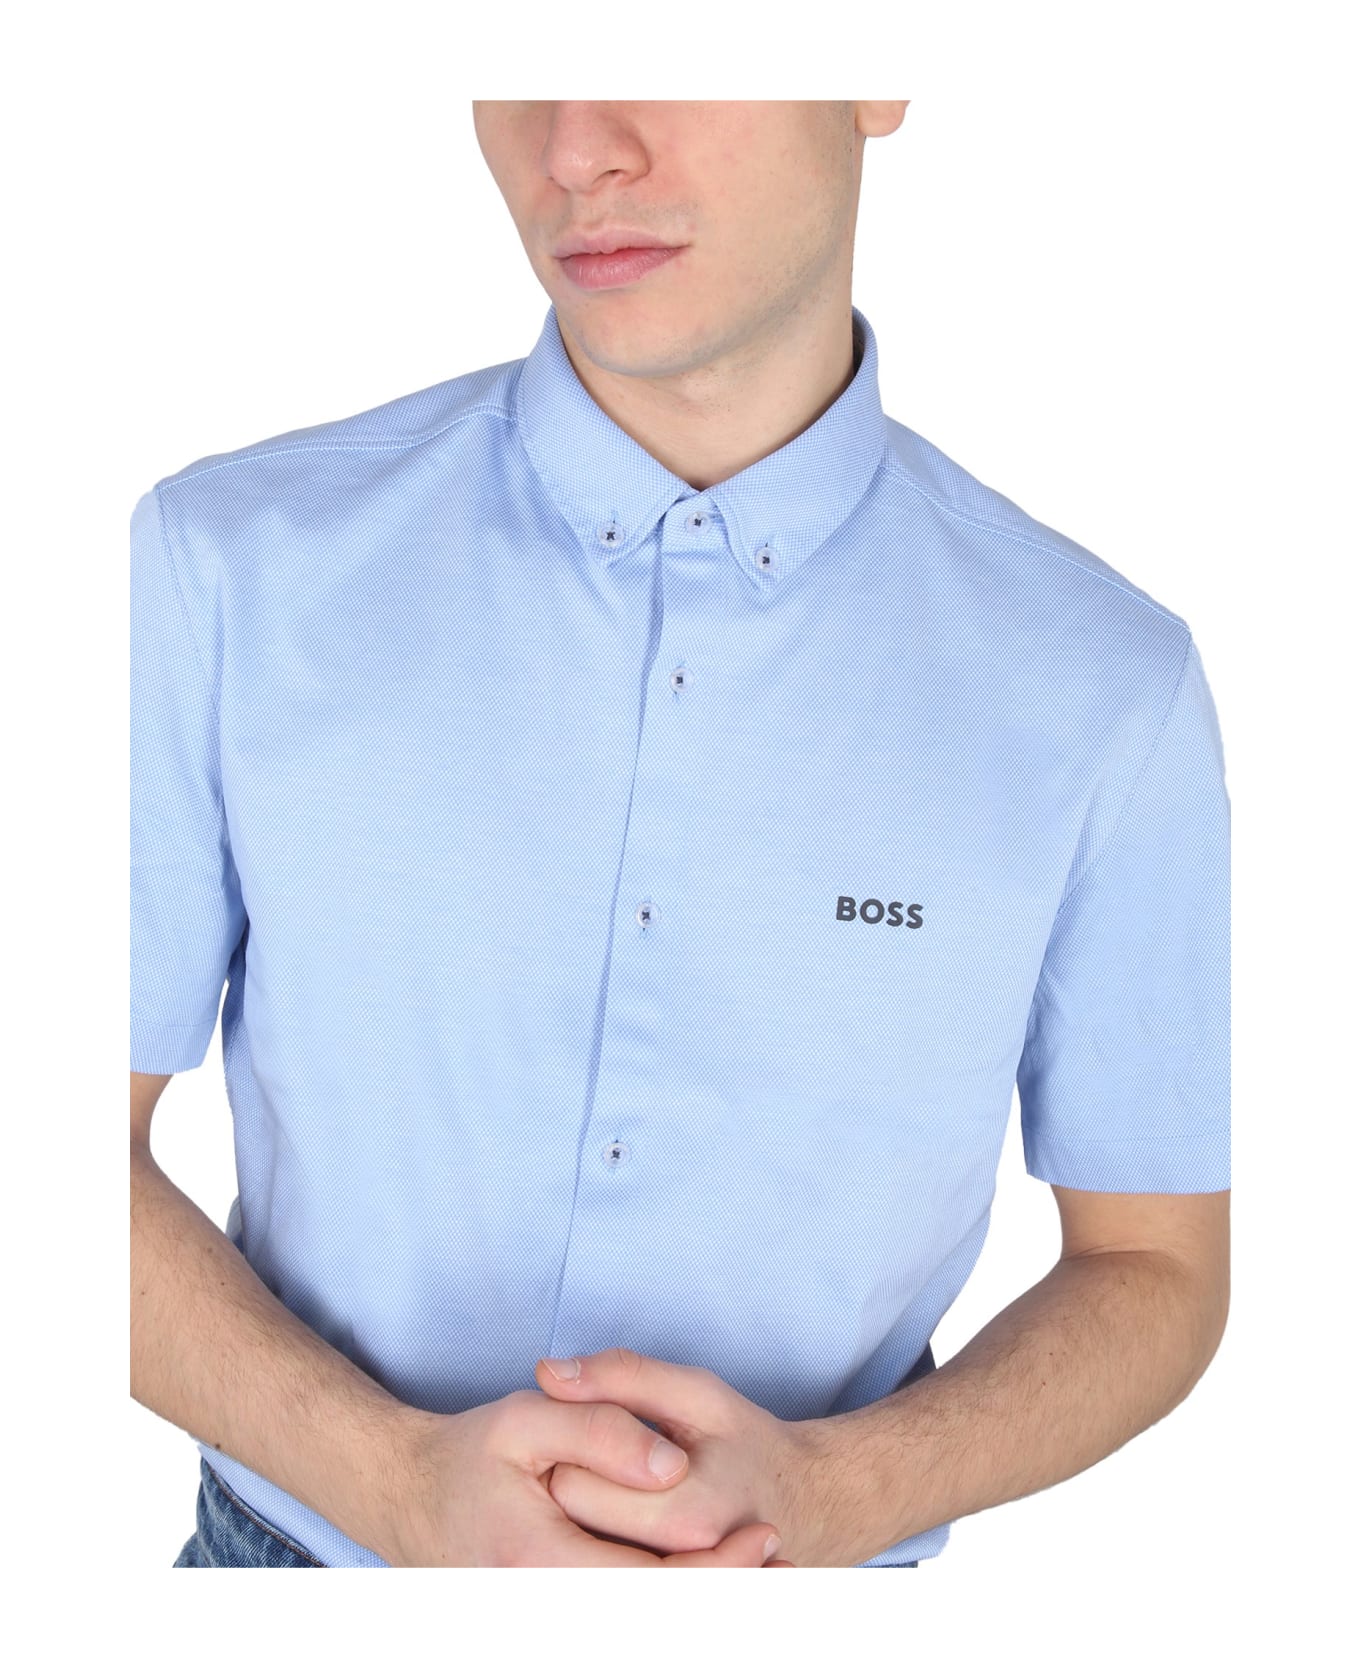 Hugo Boss Shirt With Logo - CELESTE